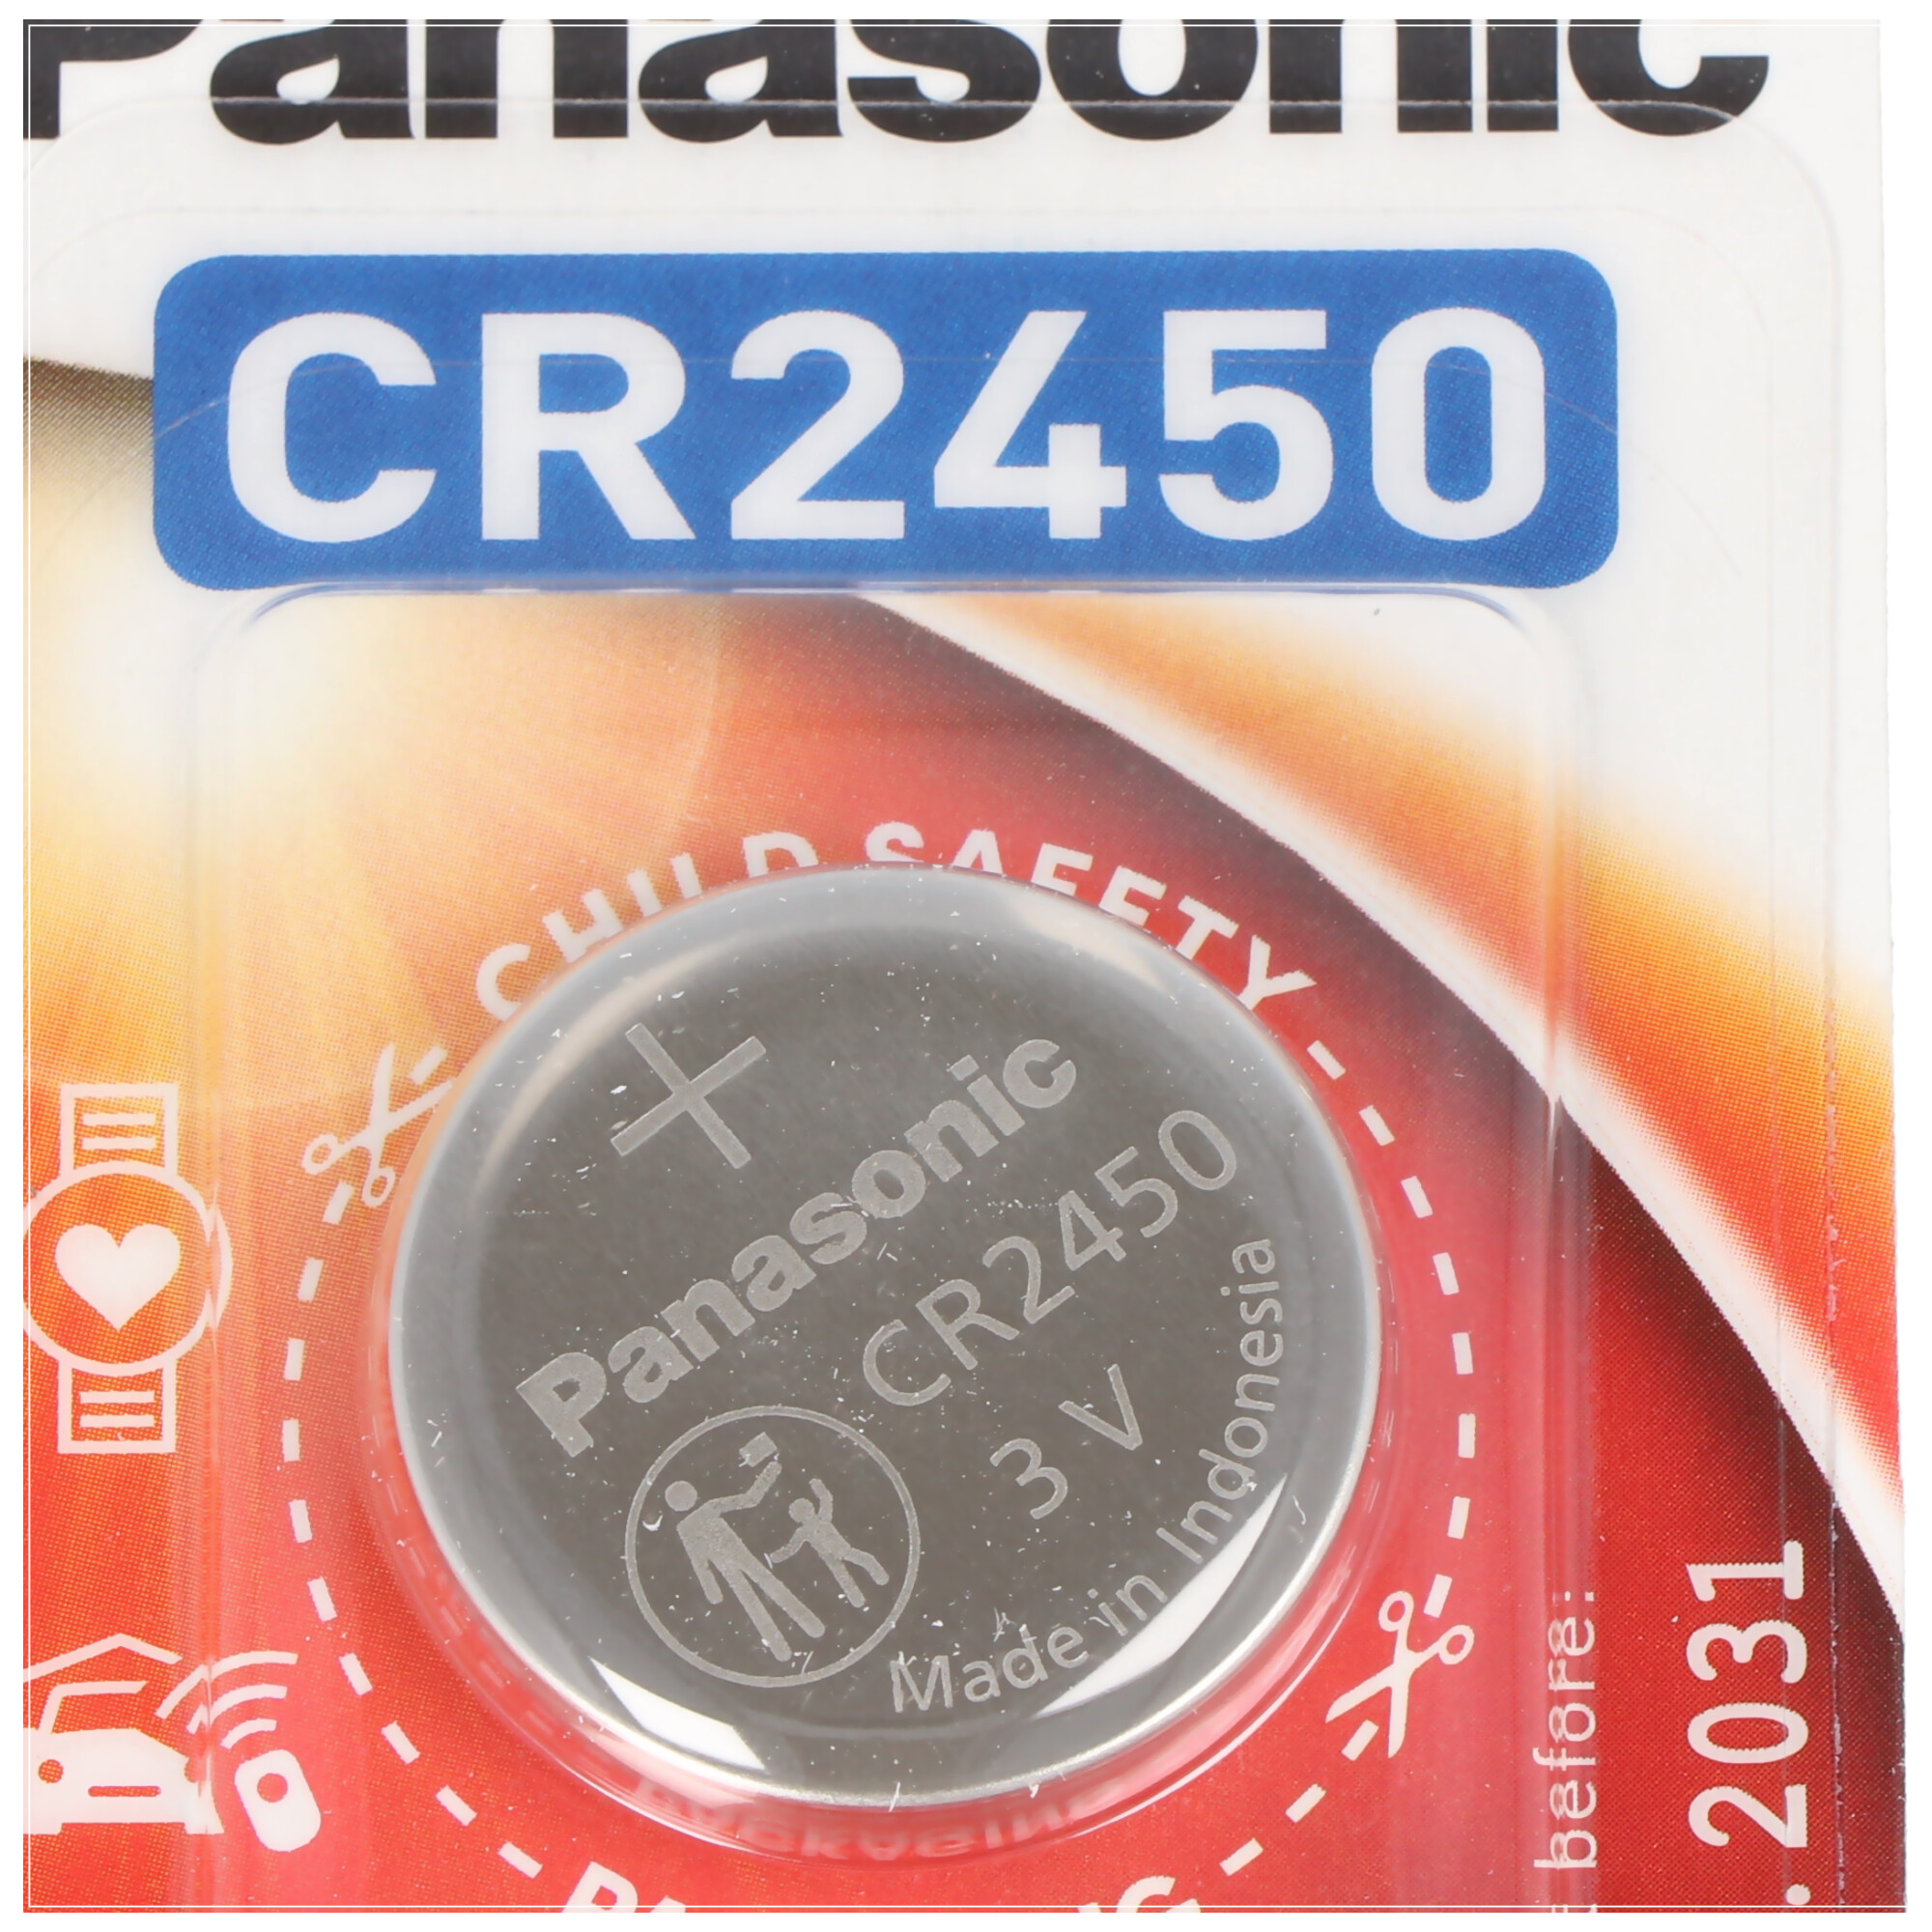 Panasonic CR2450 Lithium Batterie IEC CR 2450 EL, 5410853014355 CR-2450EL/1B